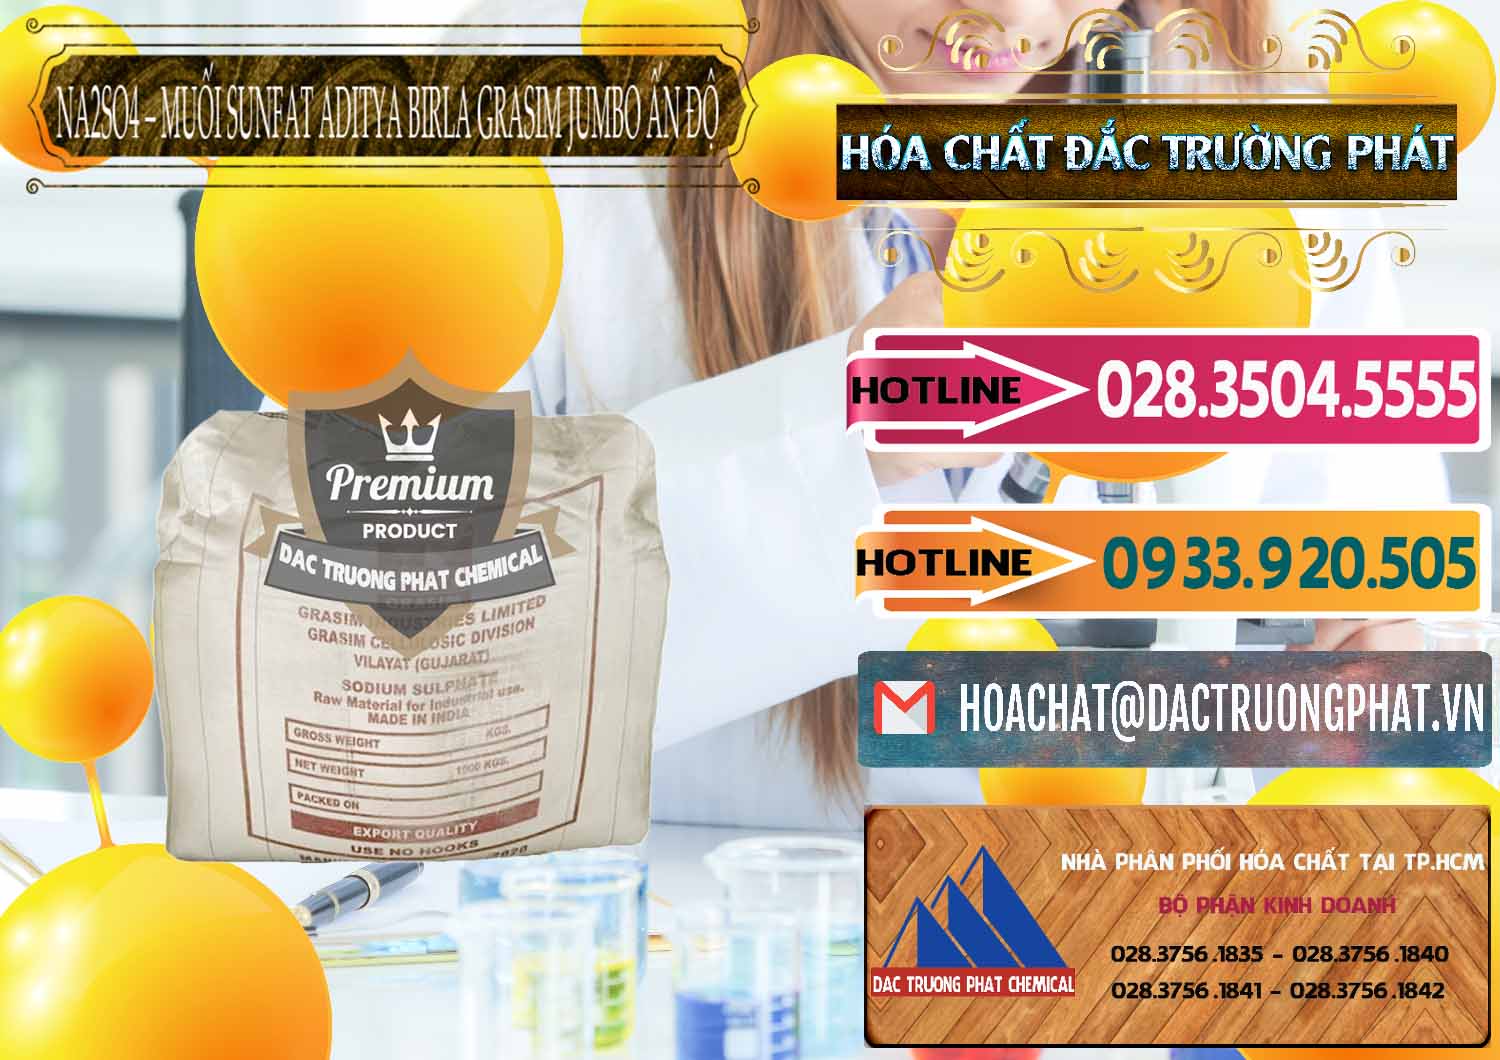 Đơn vị kinh doanh - bán Sodium Sulphate - Muối Sunfat Na2SO4 Jumbo Bành Aditya Birla Grasim Ấn Độ India - 0357 - Cty cung cấp và bán hóa chất tại TP.HCM - dactruongphat.vn